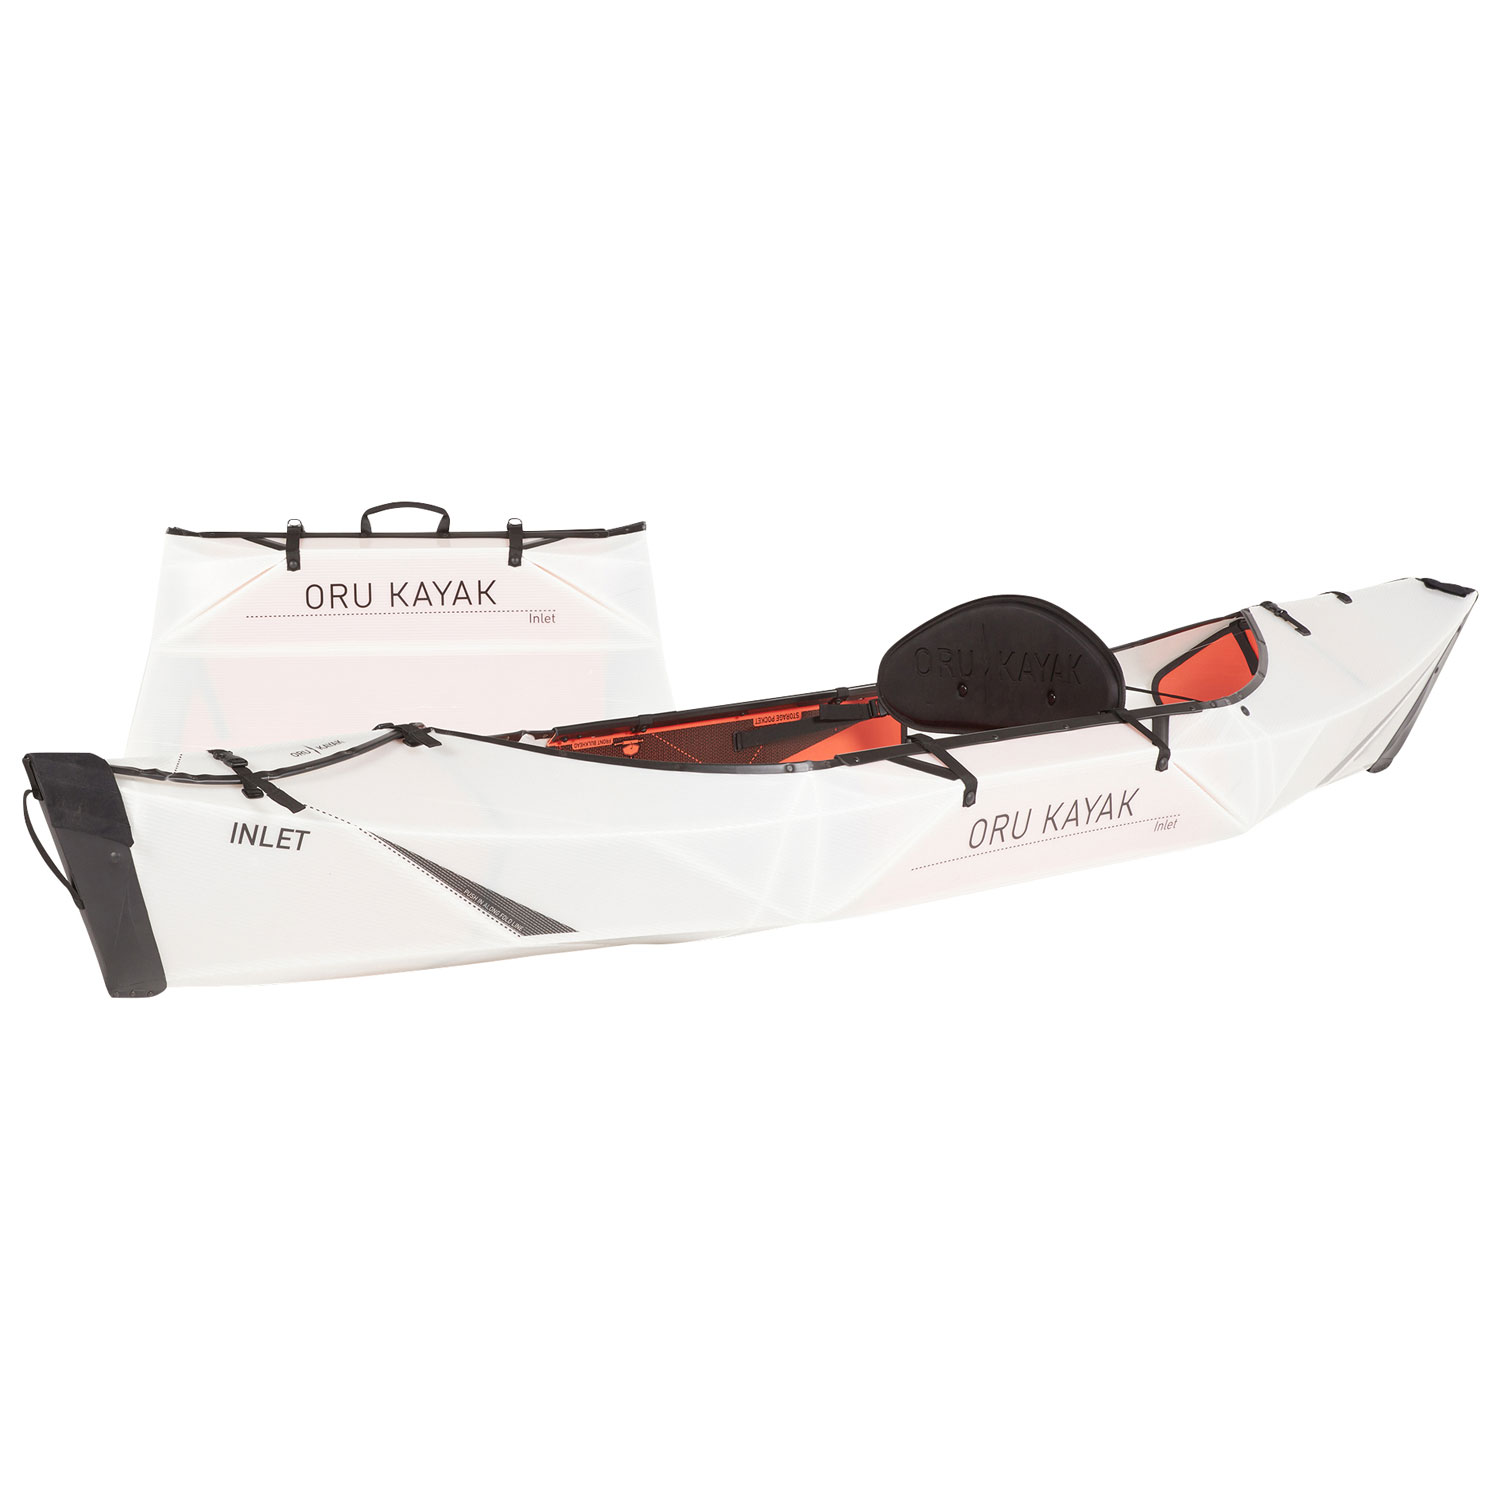 Oru Kayak Inlet 10 ft. Foldable Kayak with Paddle - White